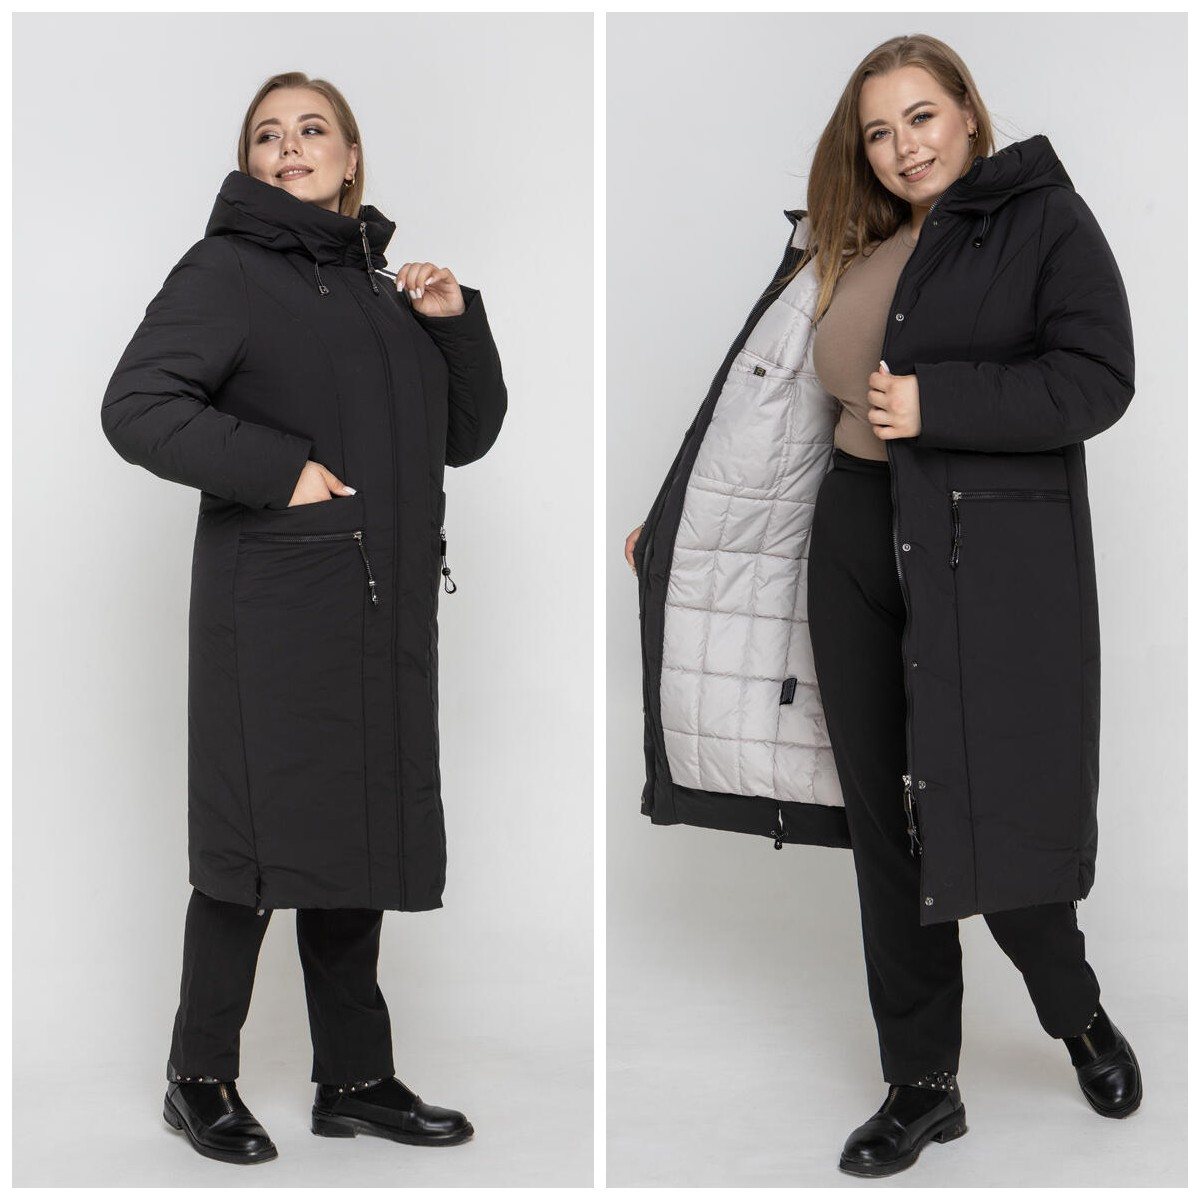 Жіноче стильне зимове пальто великих розмірів М-1012